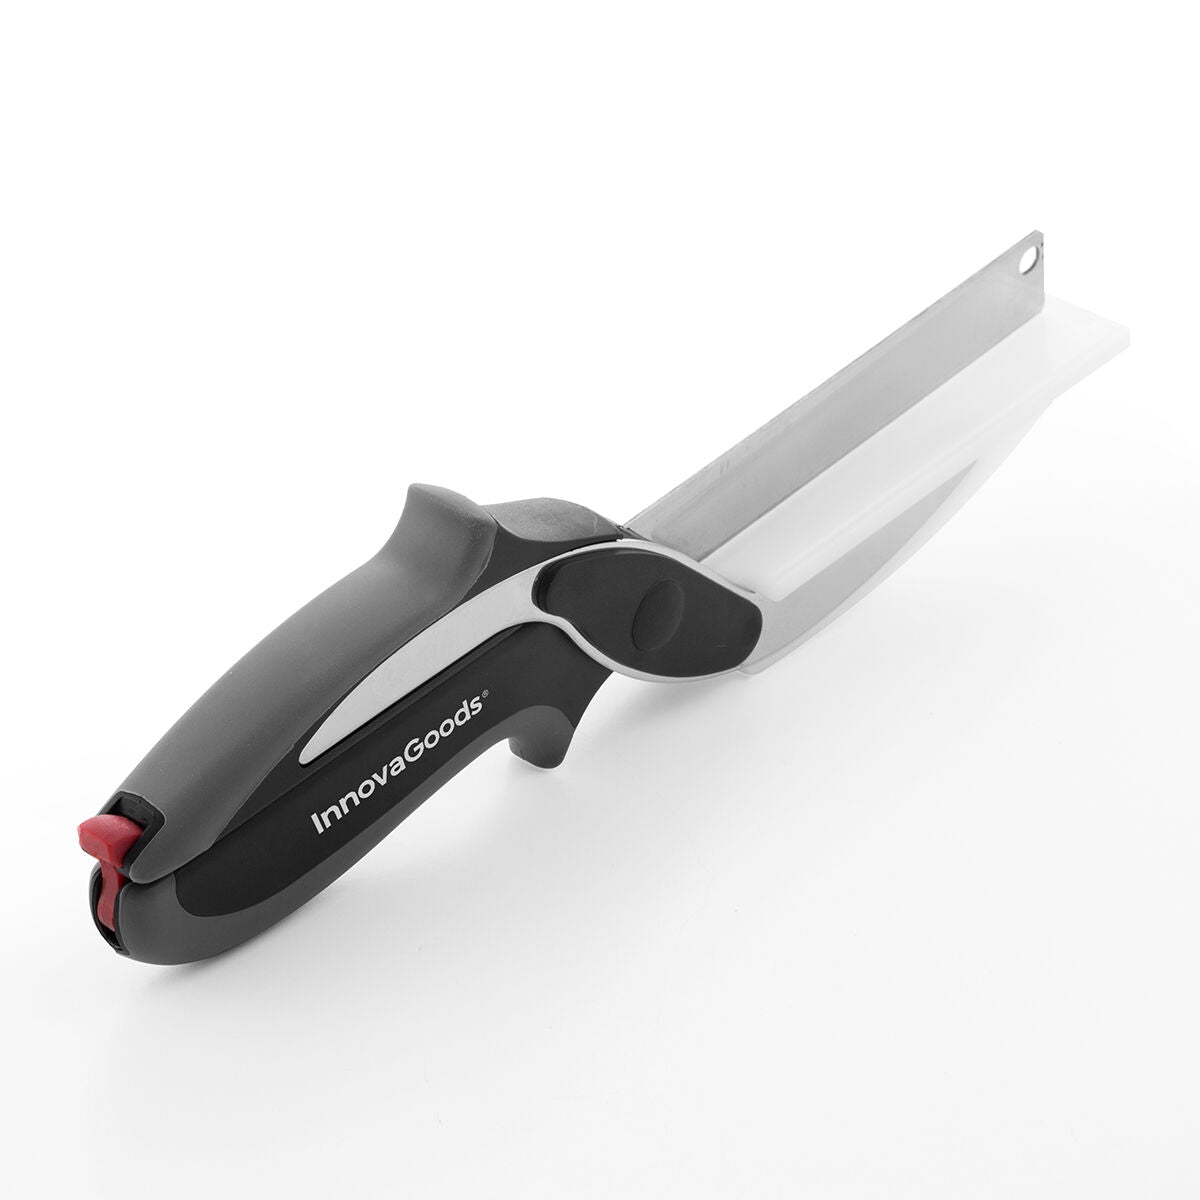 Scherenmesser mit integriertem Mini-Schneidebrett Scible InnovaGoods - CA International 